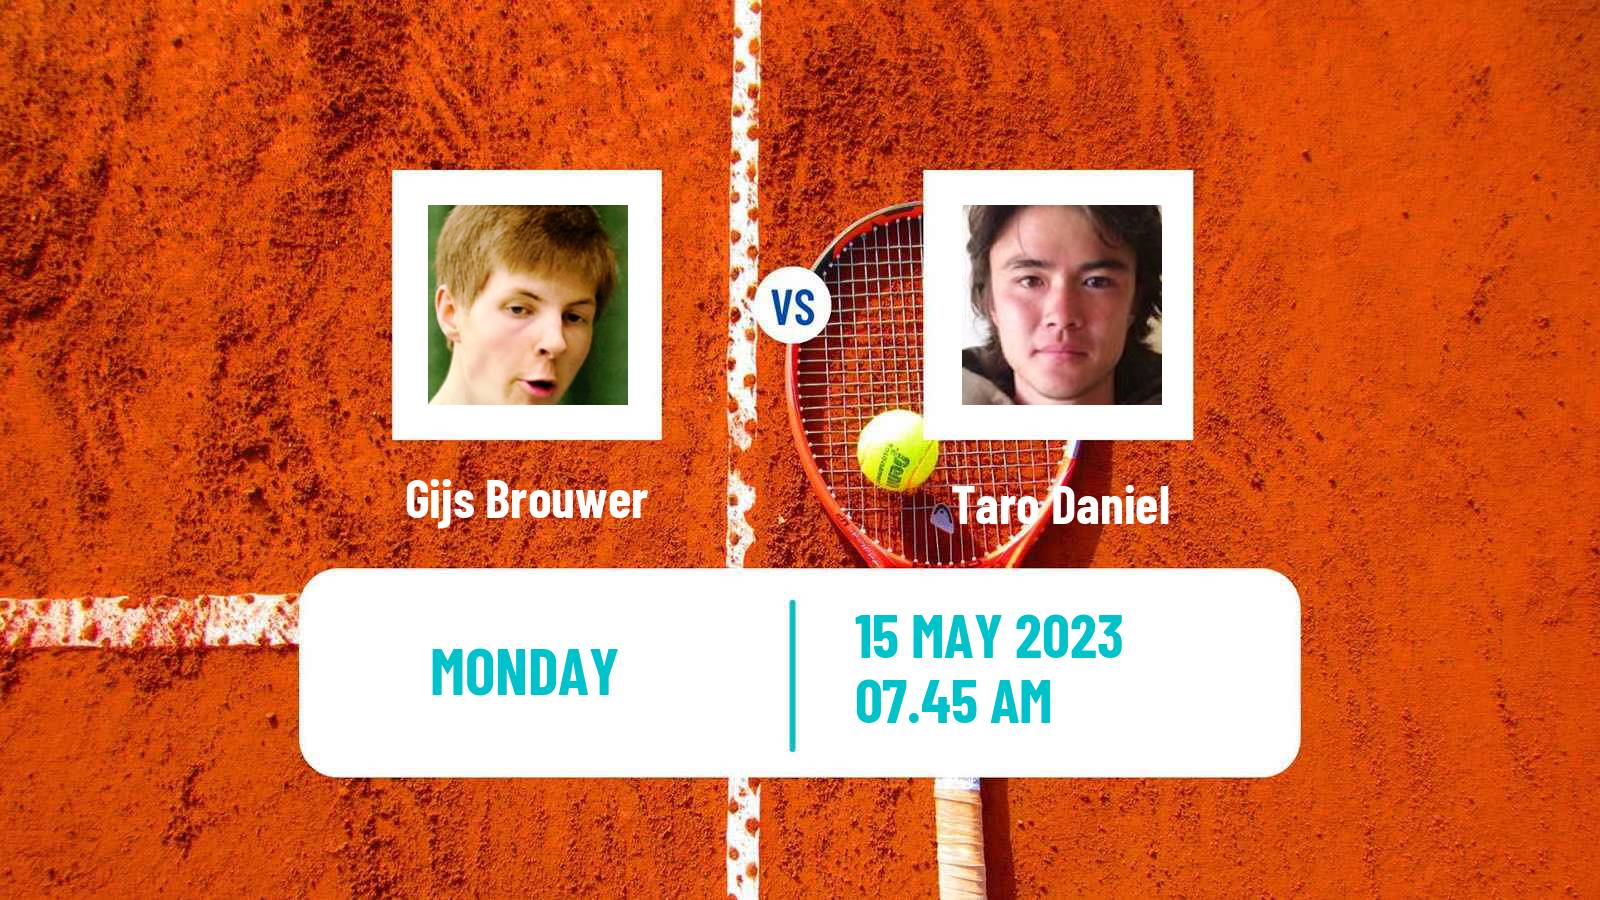 Tennis ATP Challenger Gijs Brouwer - Taro Daniel